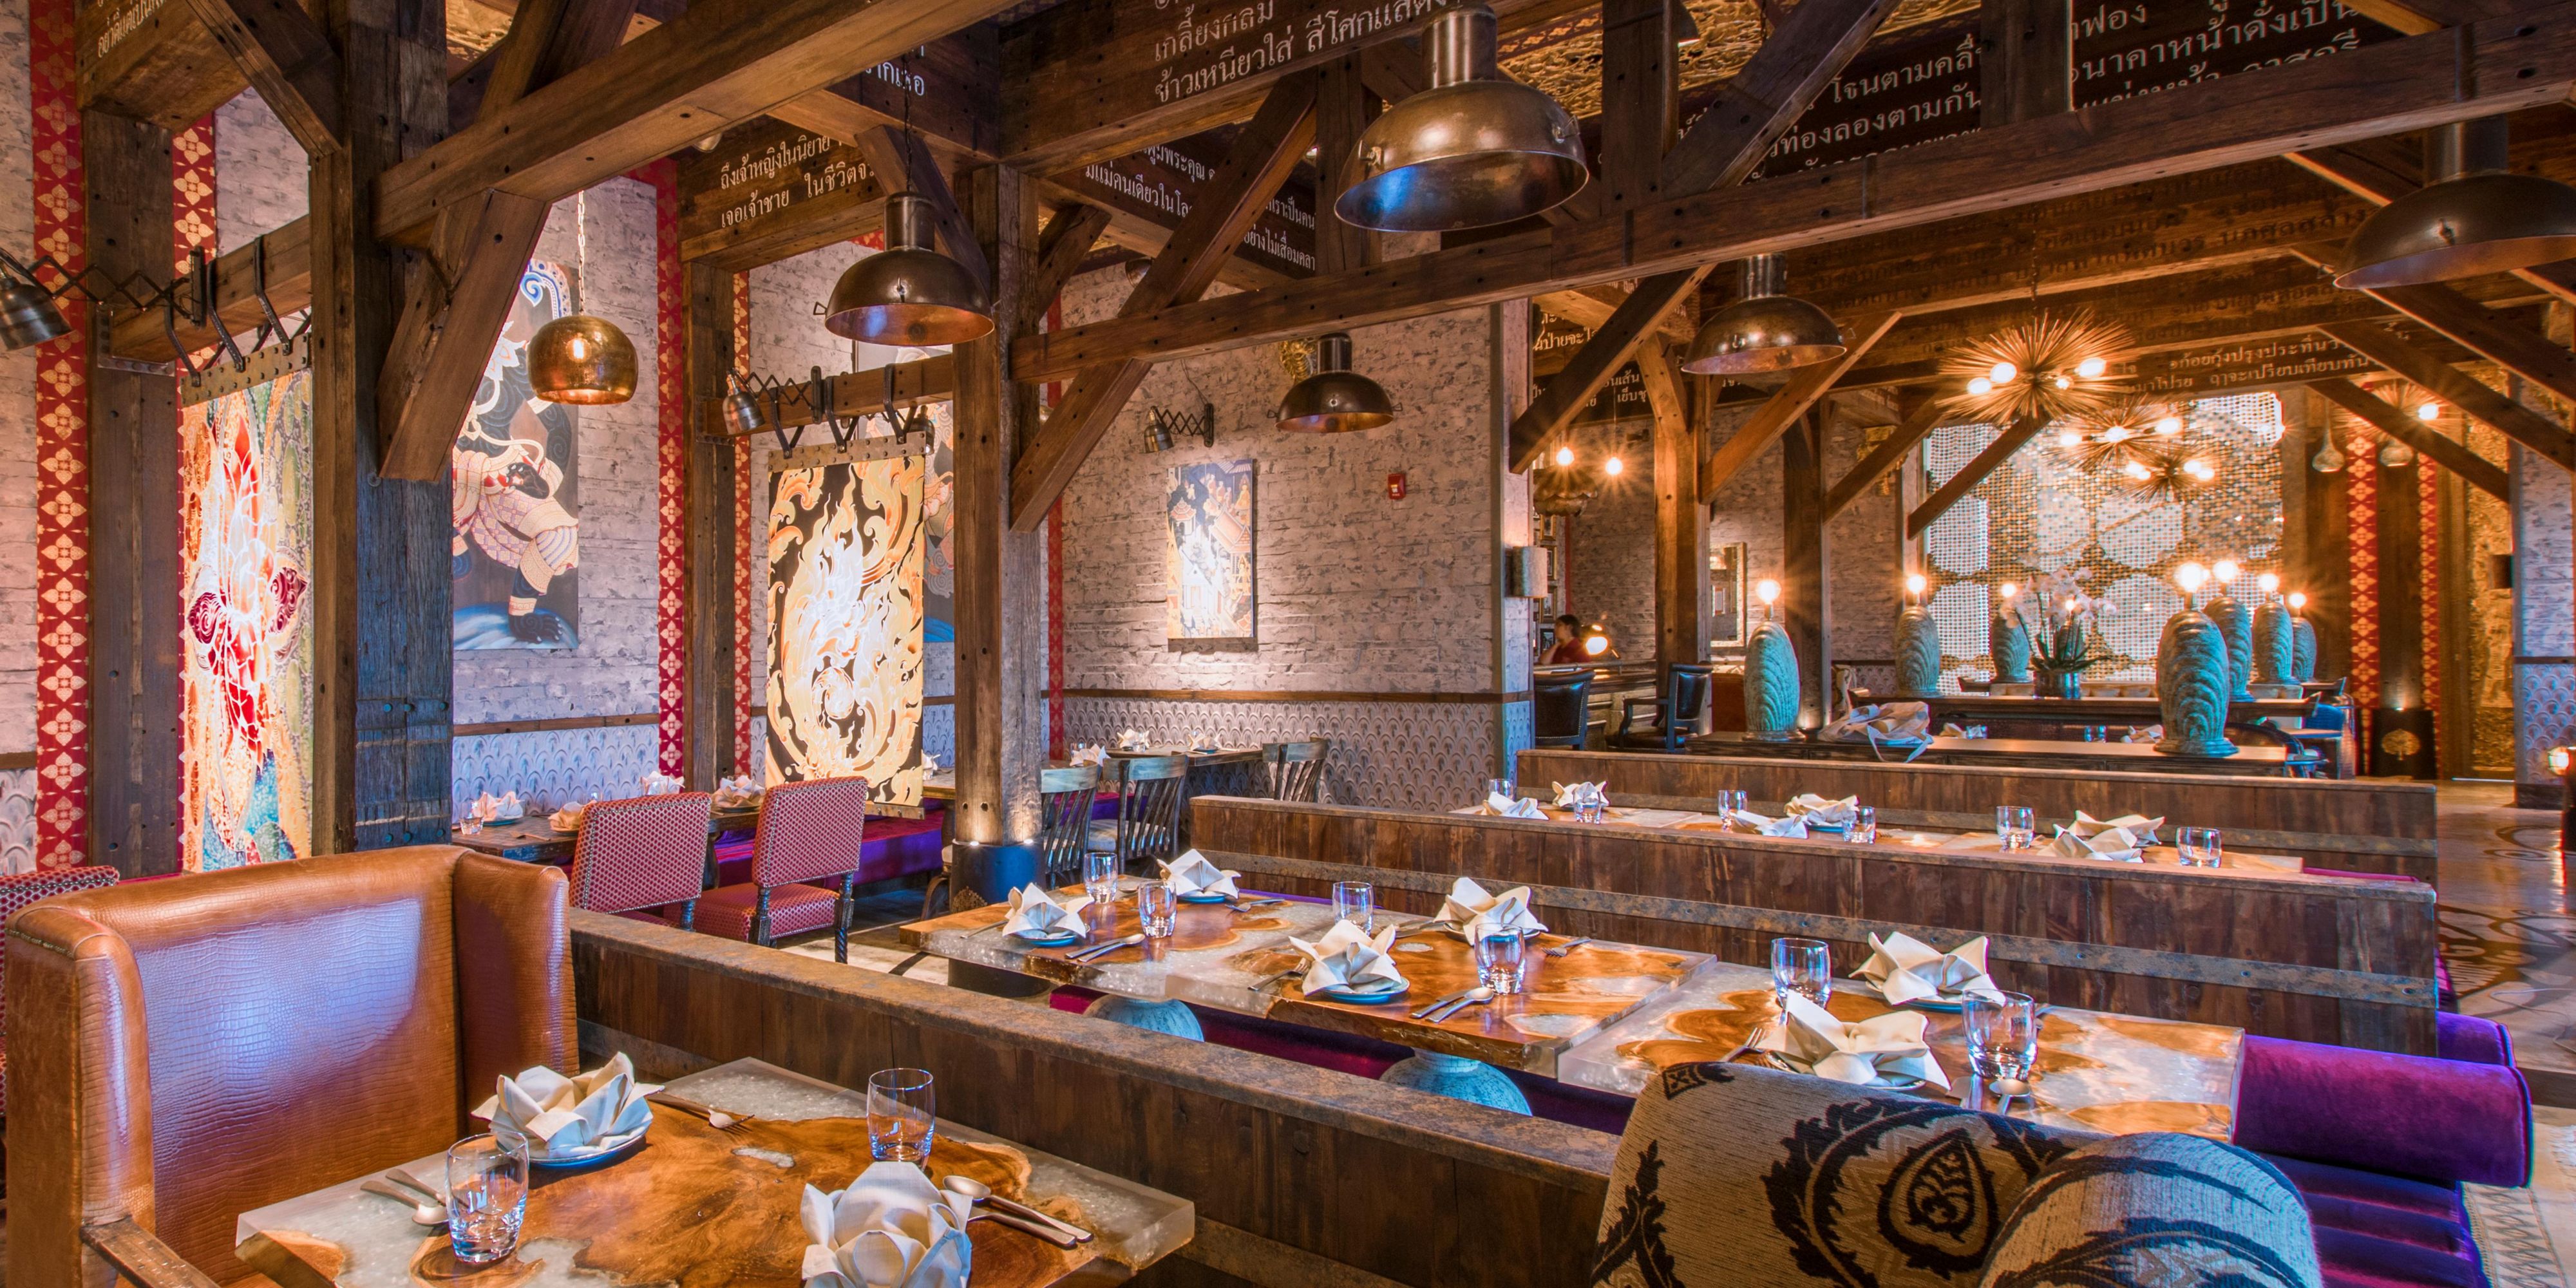 Explore the fantastic interior of Charm Thai Lounge & Restaurant